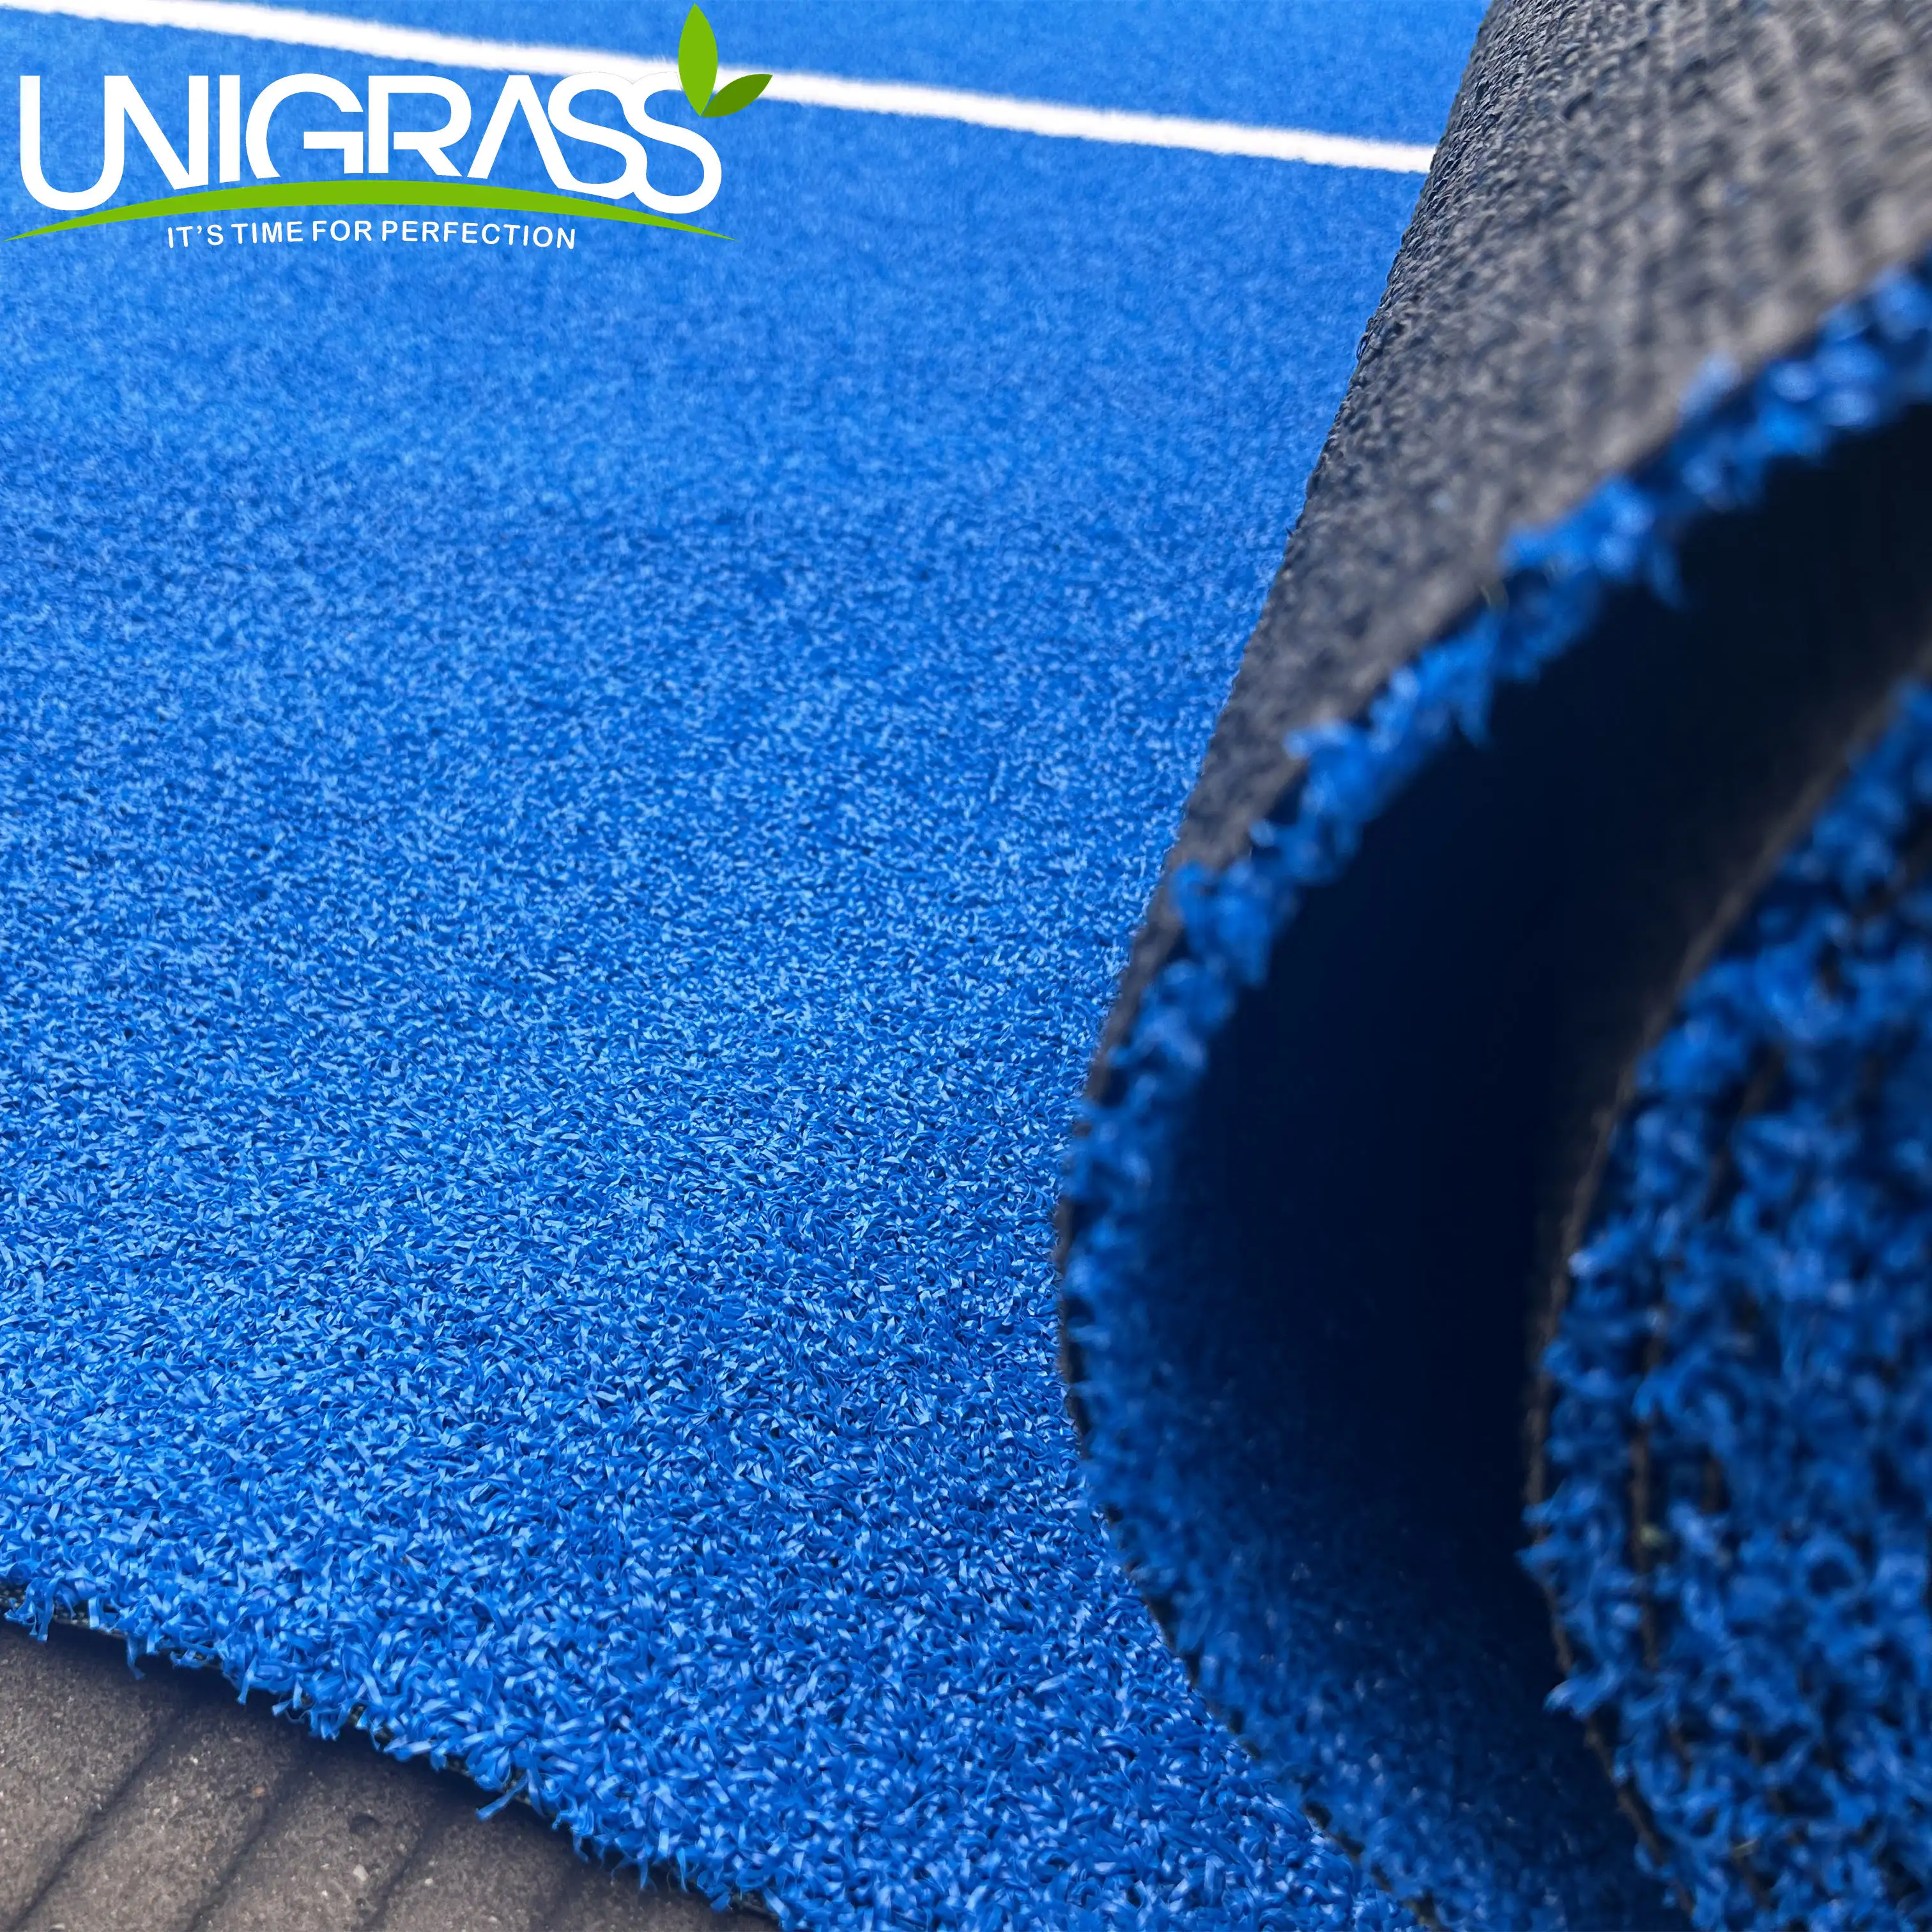 Uni grass Neues Produkt 12Mm Kunstrasen Teppich Kosten Padel Gras Für Golf Tennisplatz Kunstrasen Outdoor